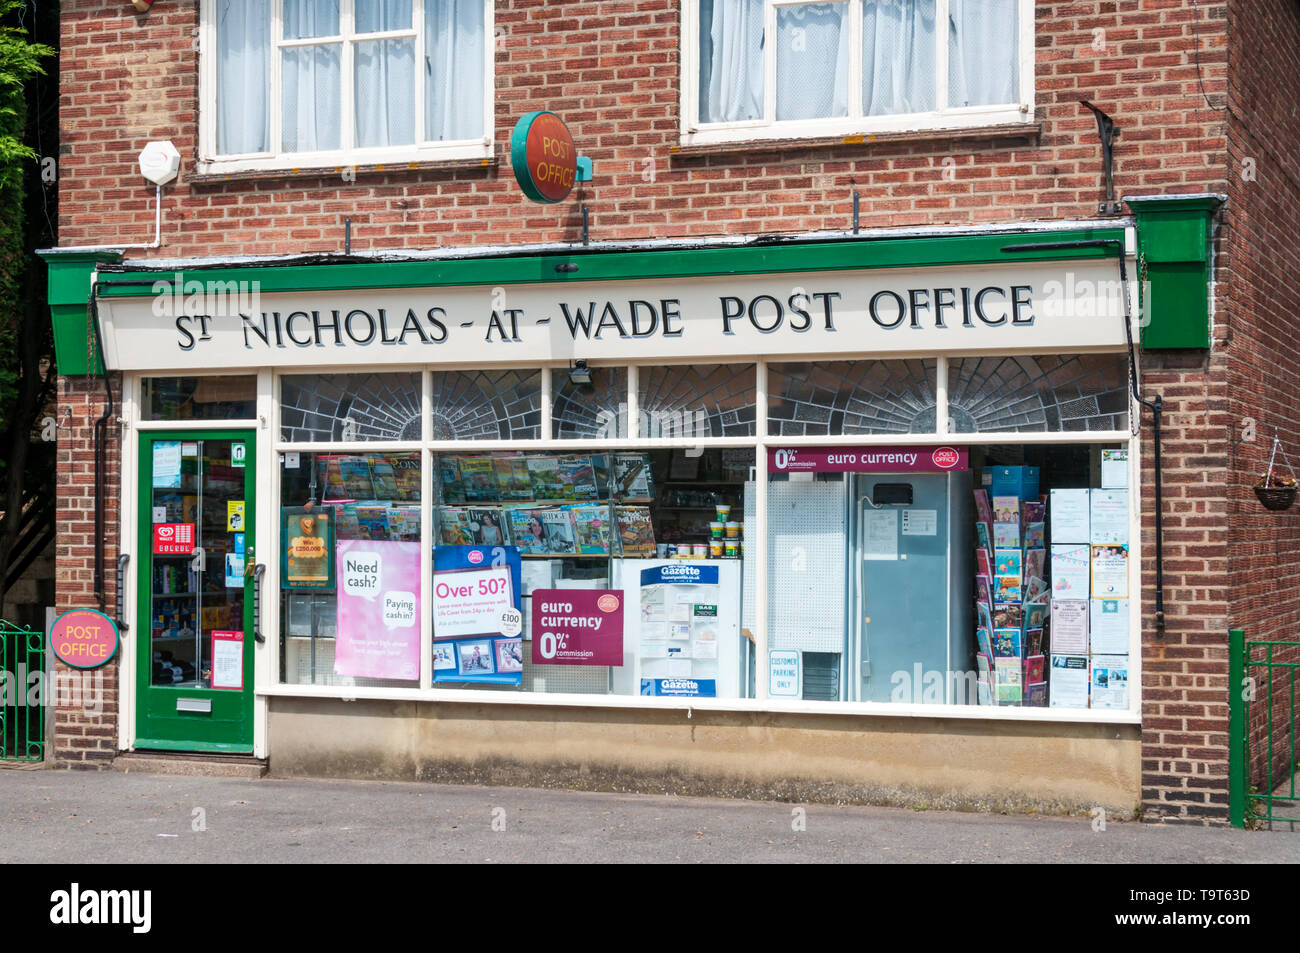 Il villaggio di Post Office di St Nicholas-a-Wade sull'isola di Thanet, Kent. Foto Stock